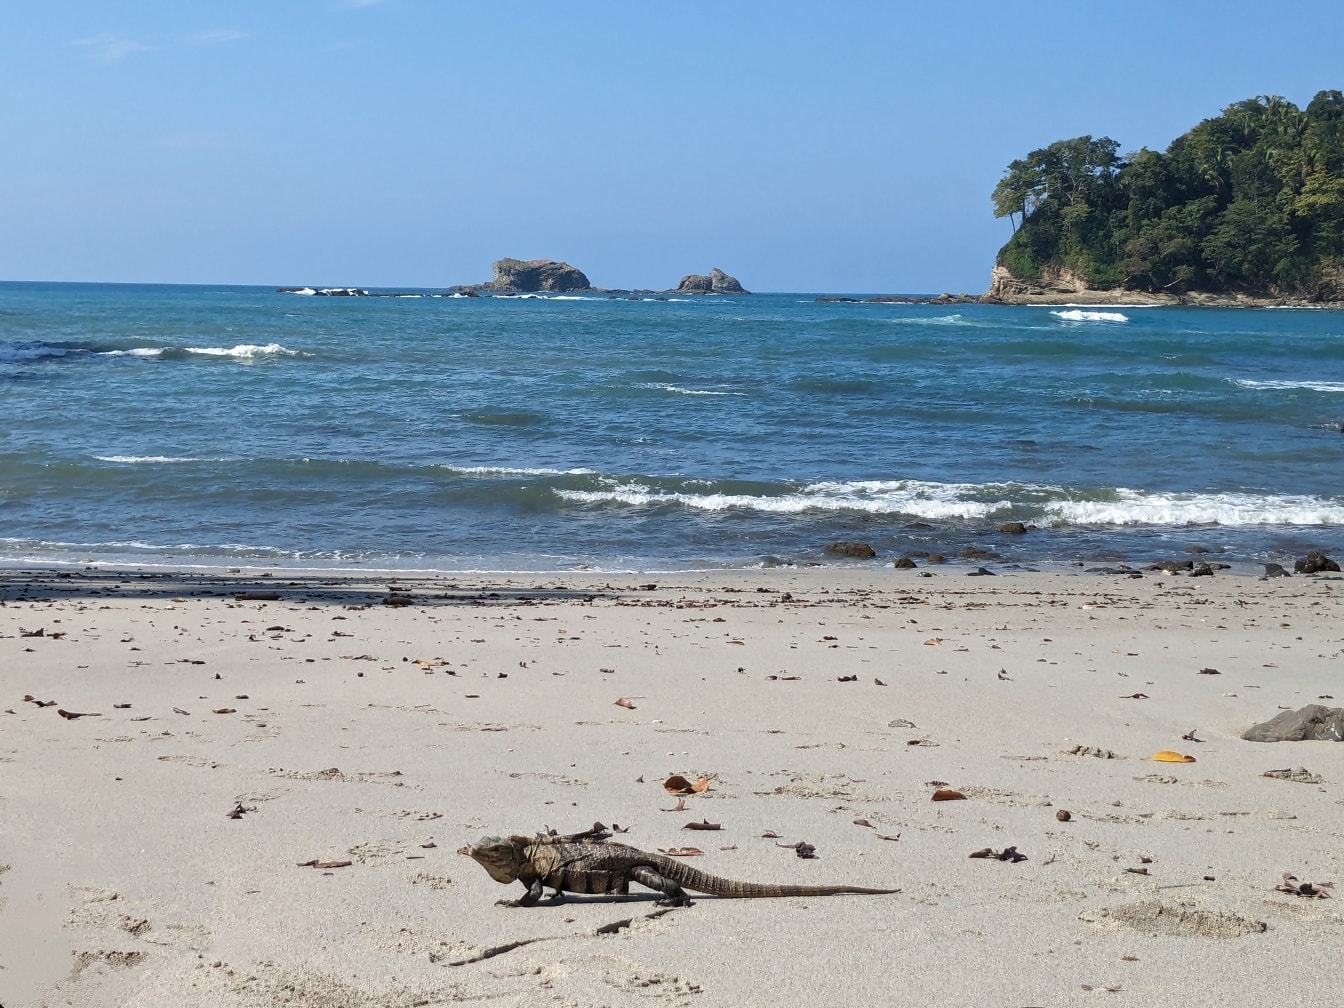 Fekete leguán (Ctenosaura similis) a trópusi karibi tengerpart homokján